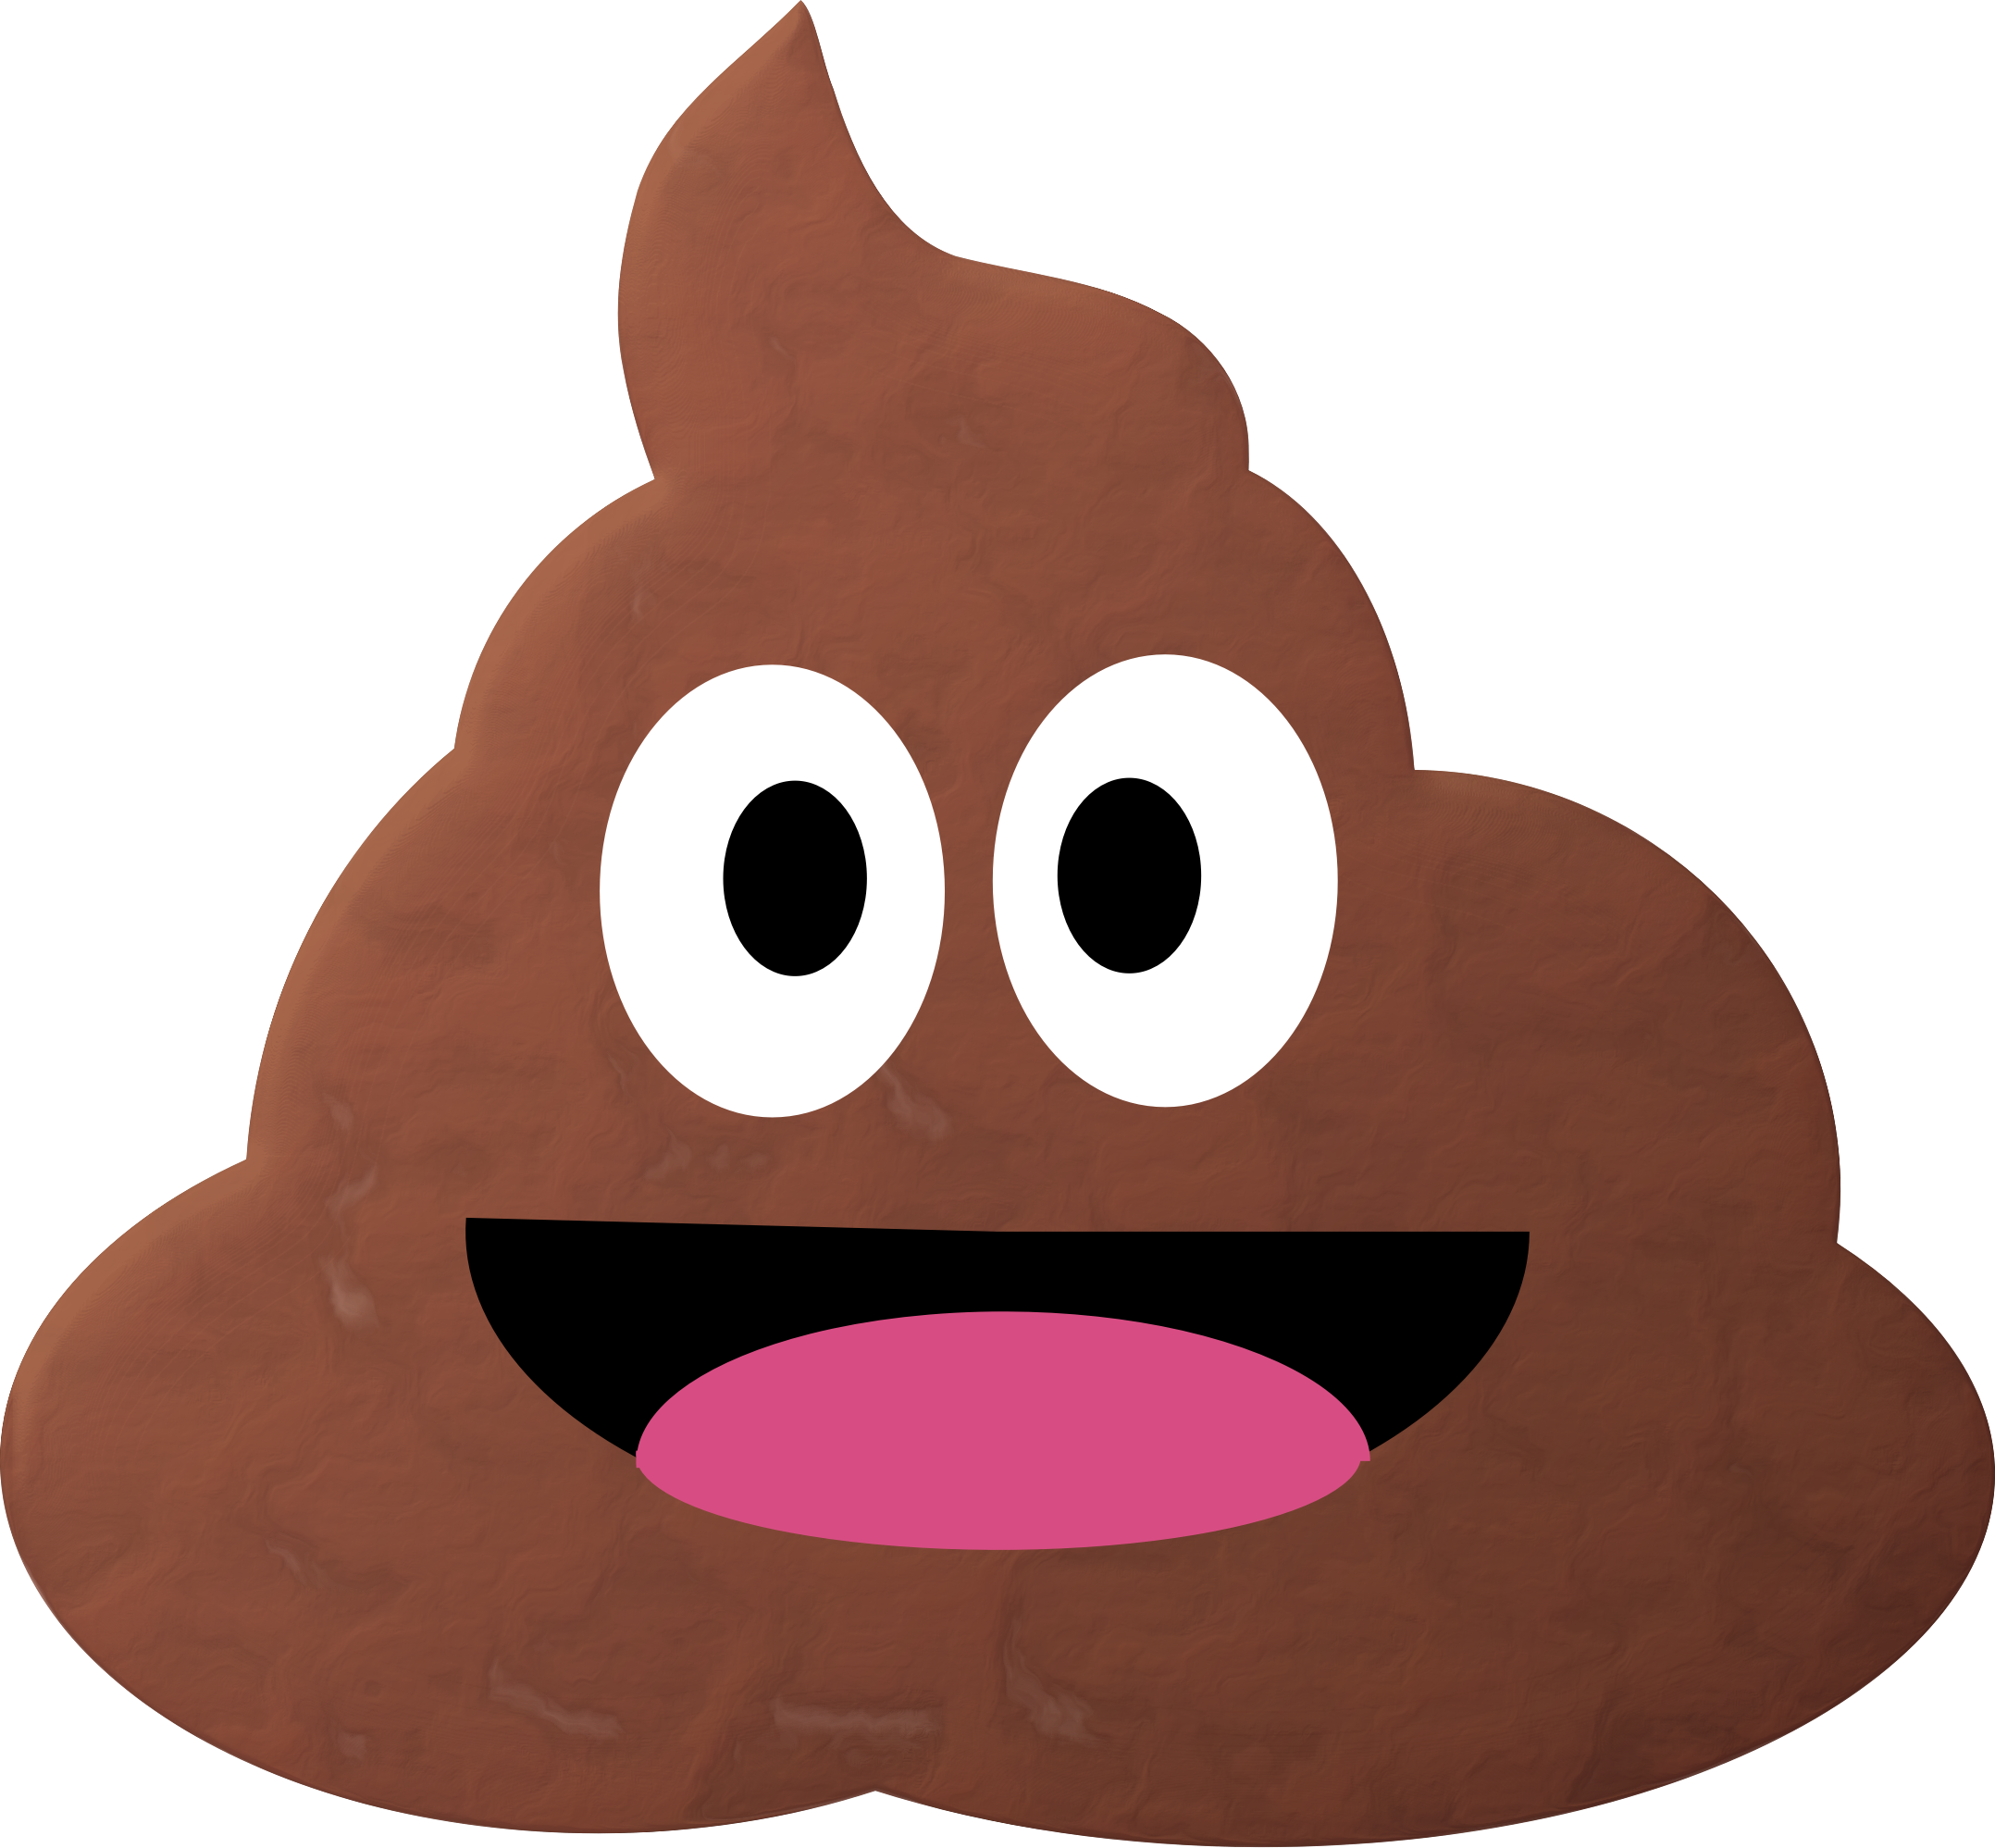 Poop Clipart Emogi Poop Emogi Transparent Free For Download On Webstockreview 2020